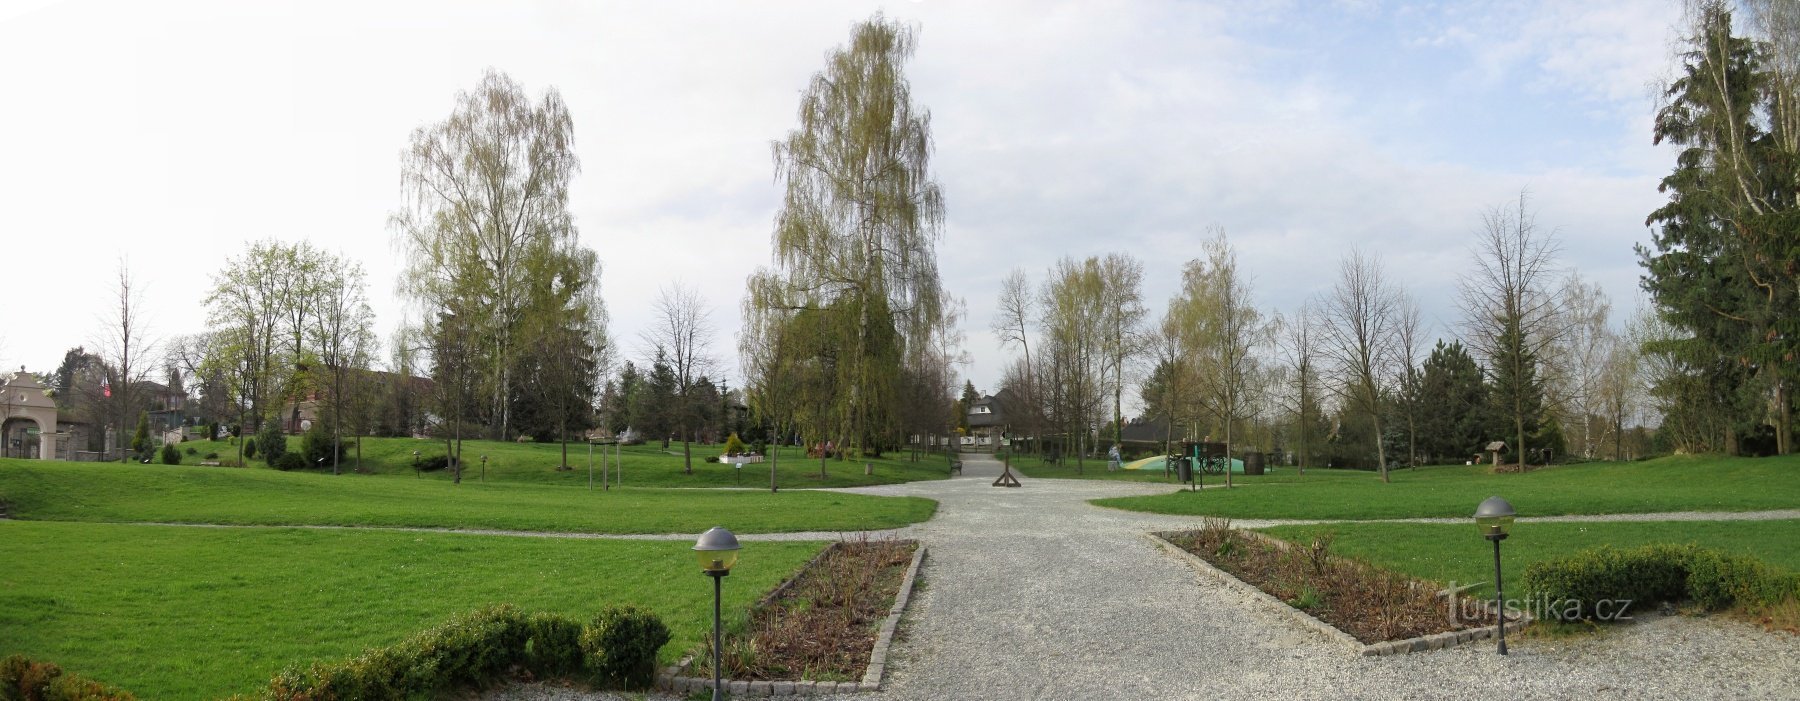 Kunice - Castillo de Berchtold, un parque con castillos en miniatura y un sendero educativo